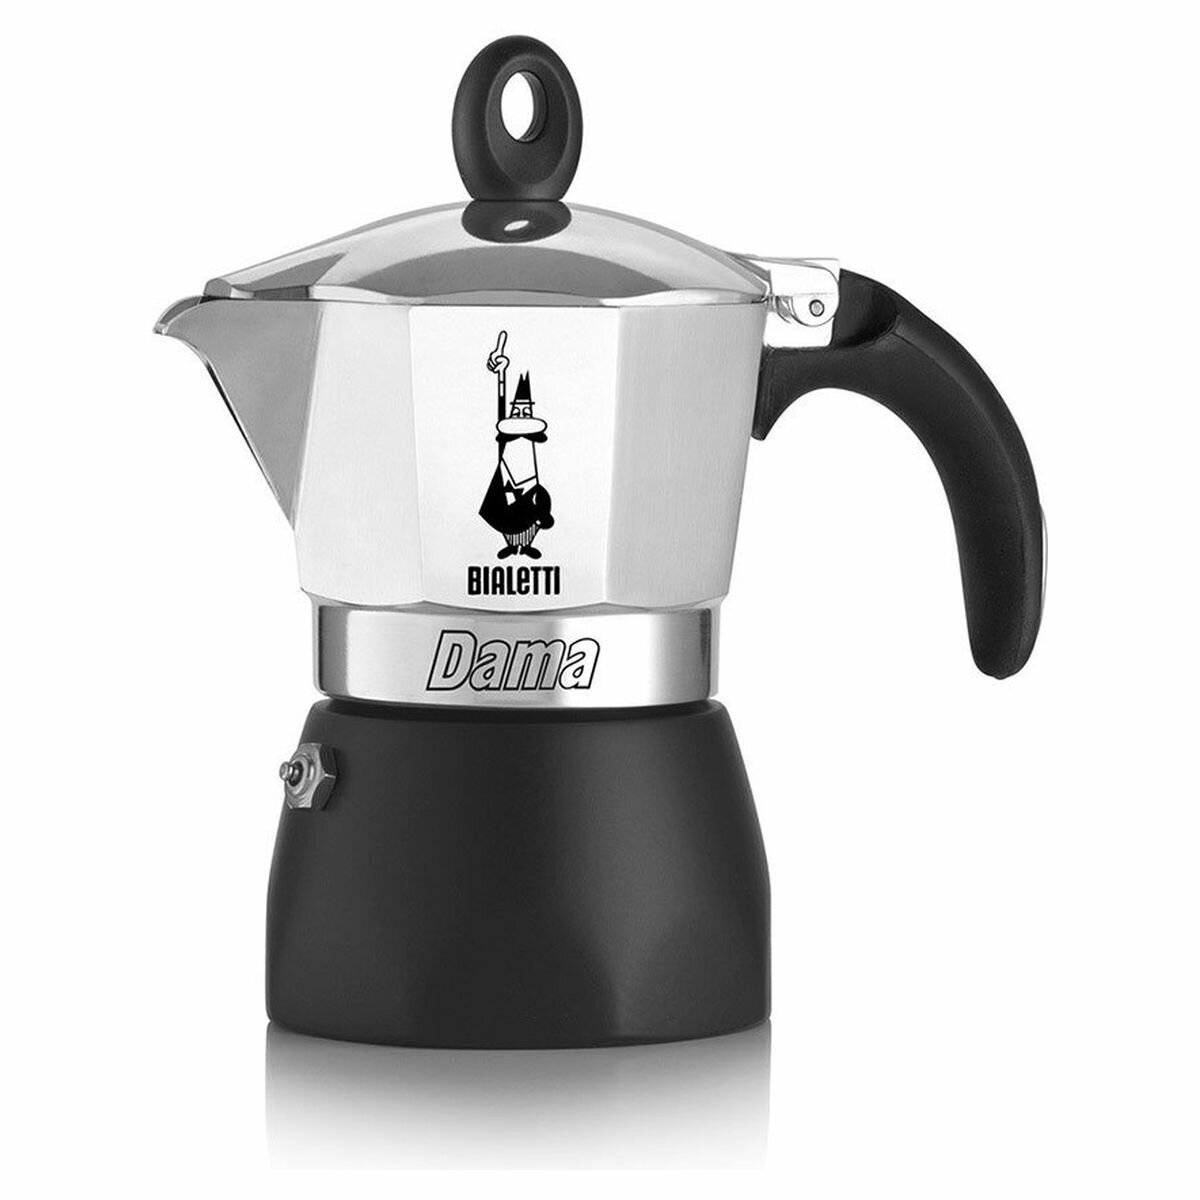 Bialetti Dama Espresso Maker 3 cups – Tavola Italian Market